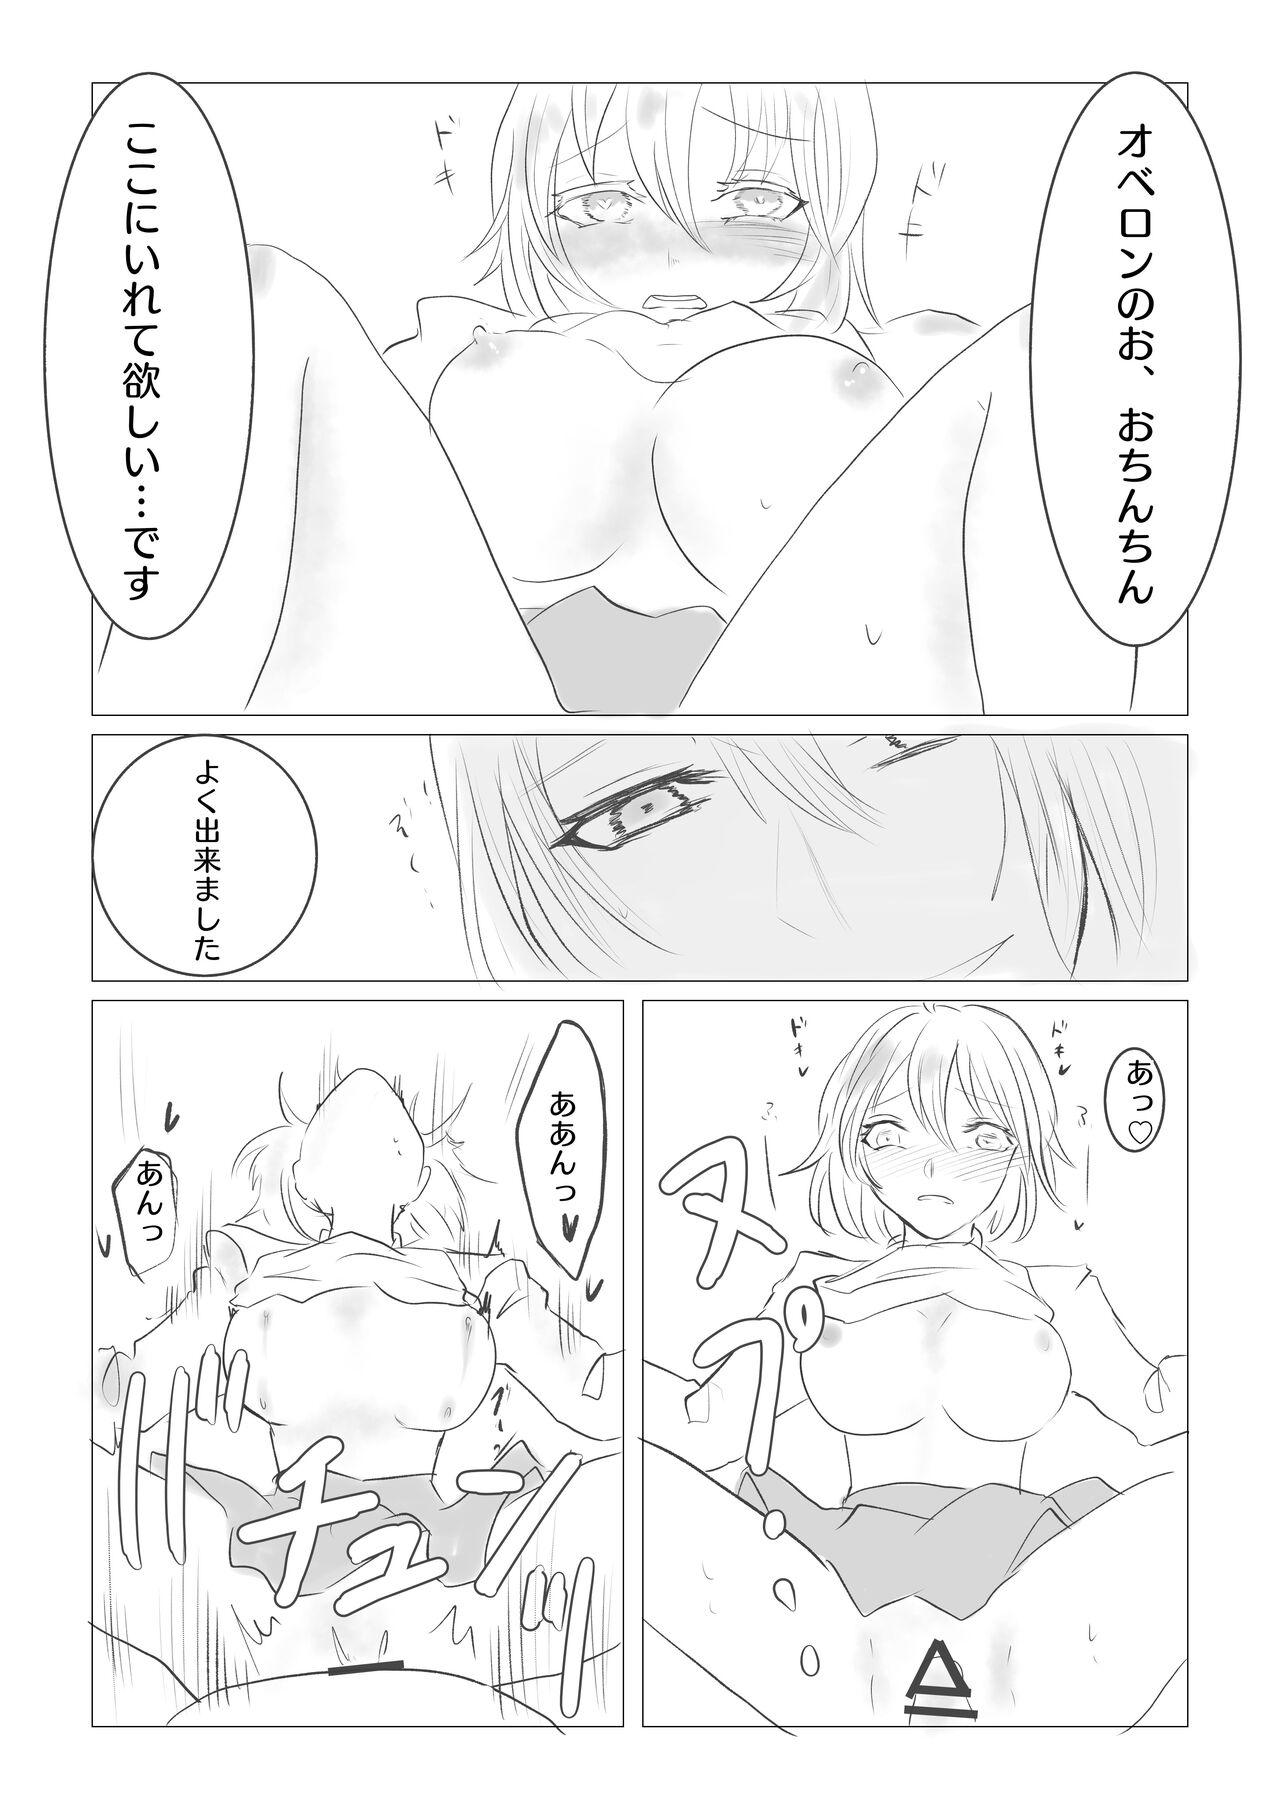 Bedroom Ya tteru dake no Obe guda ♀ manga[ fate grand order ) - Fate grand order Naked Sex - Page 7